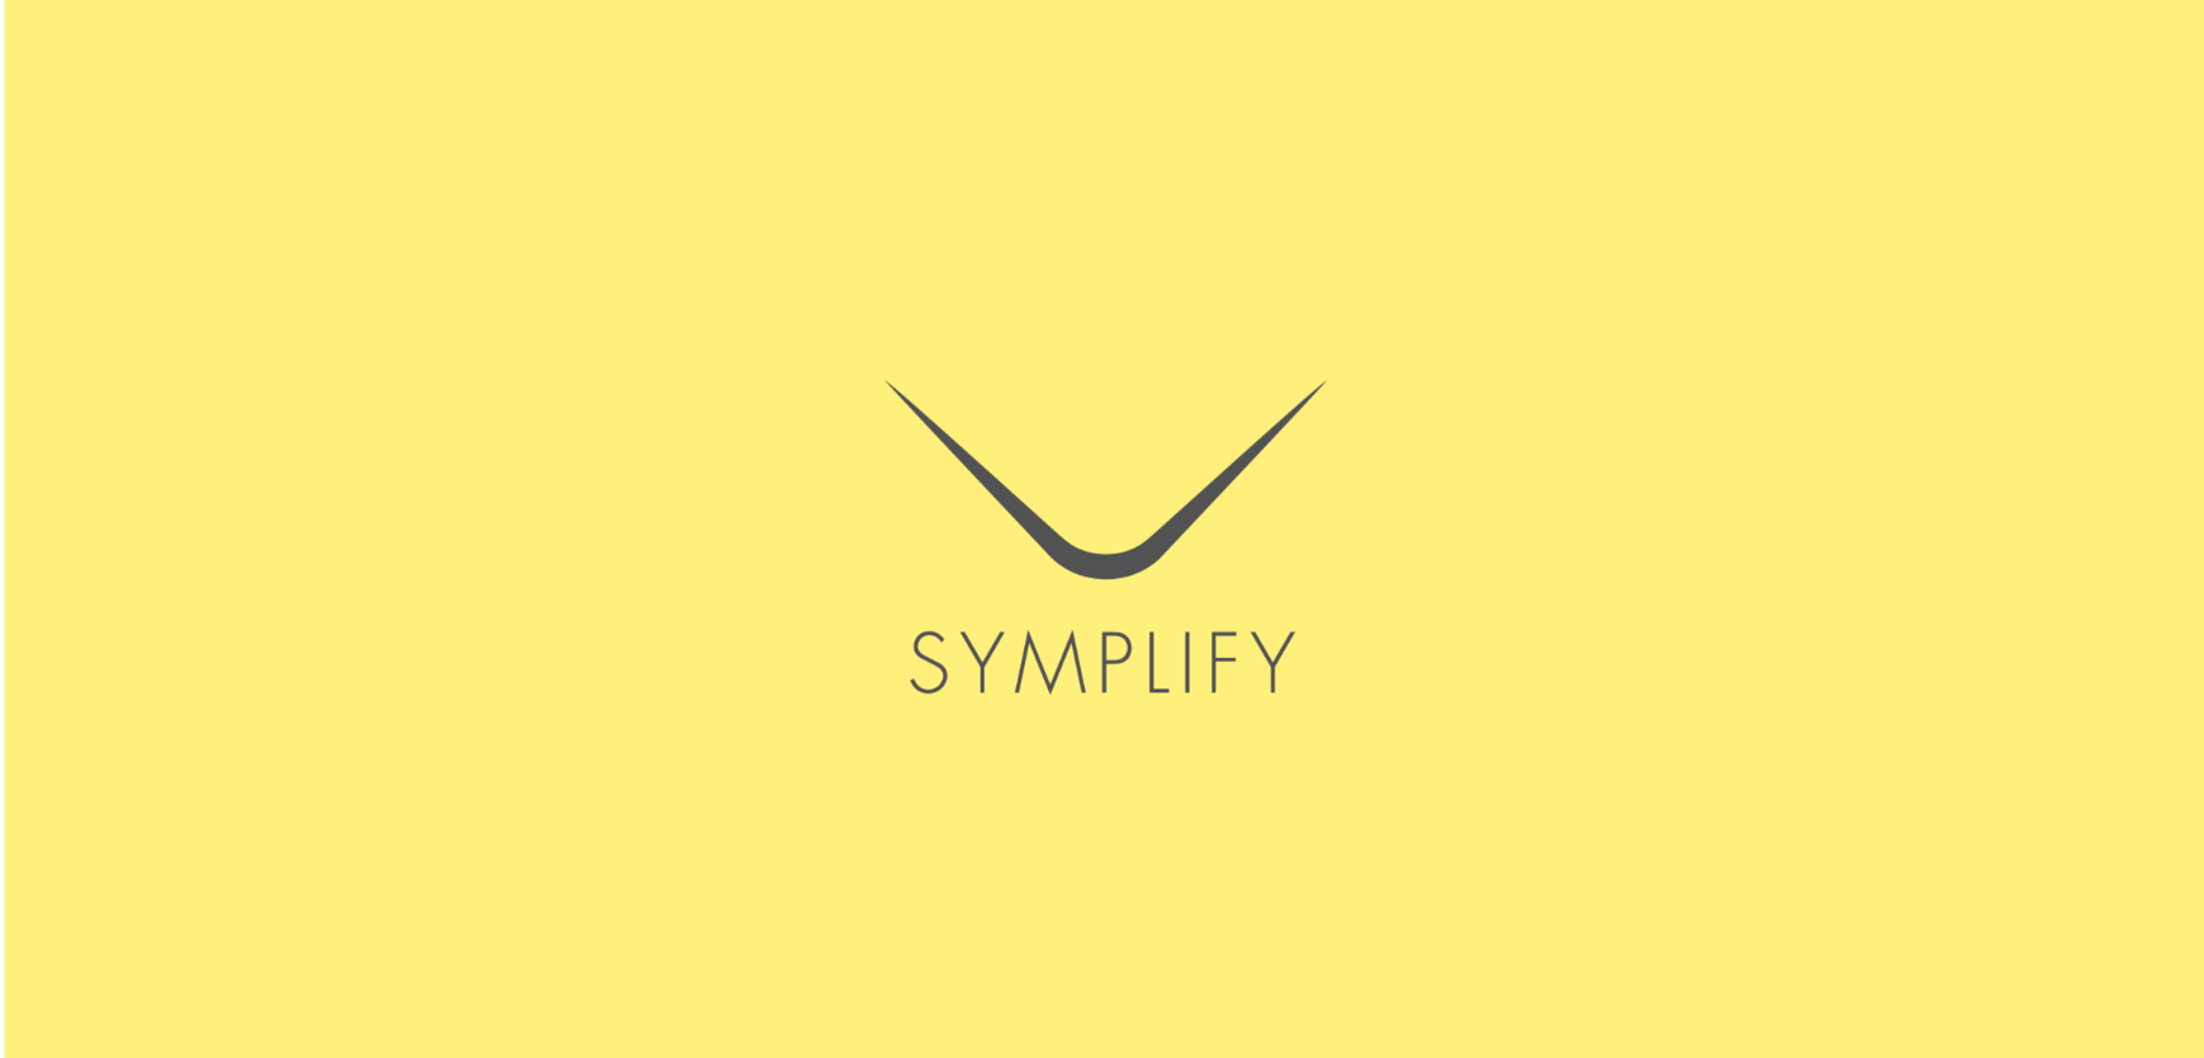 Symplfiy_Optics_PR